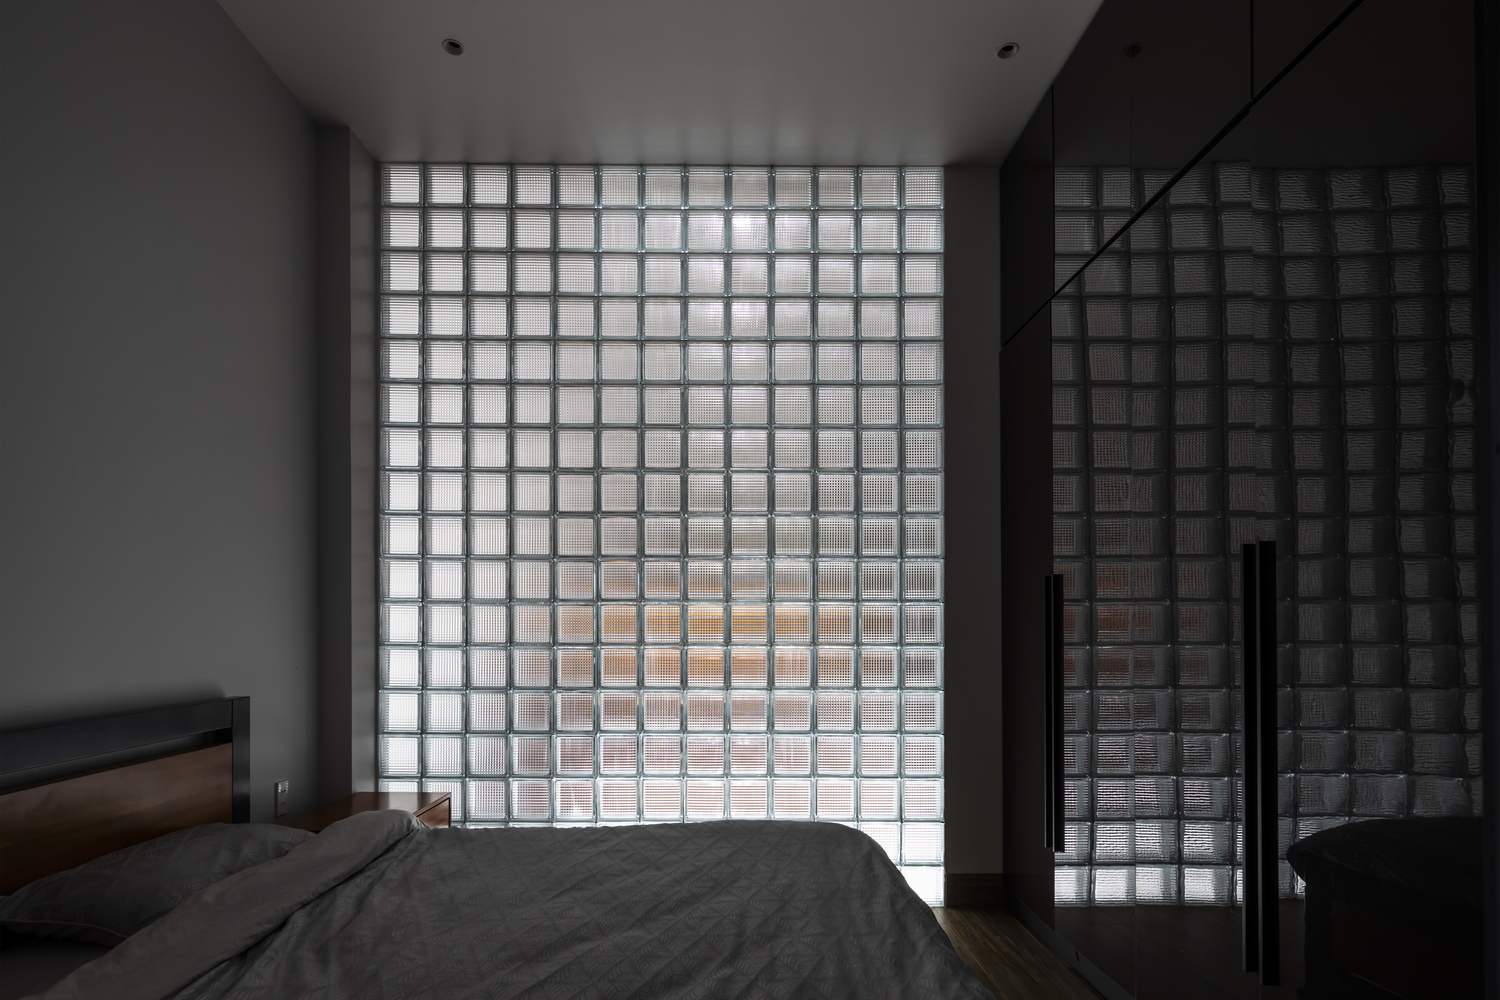 Gạch kính đảm bảo độ thoáng sáng cho phòng ngủ mà vẫn giữ được tính riêng tư thiết yếu.